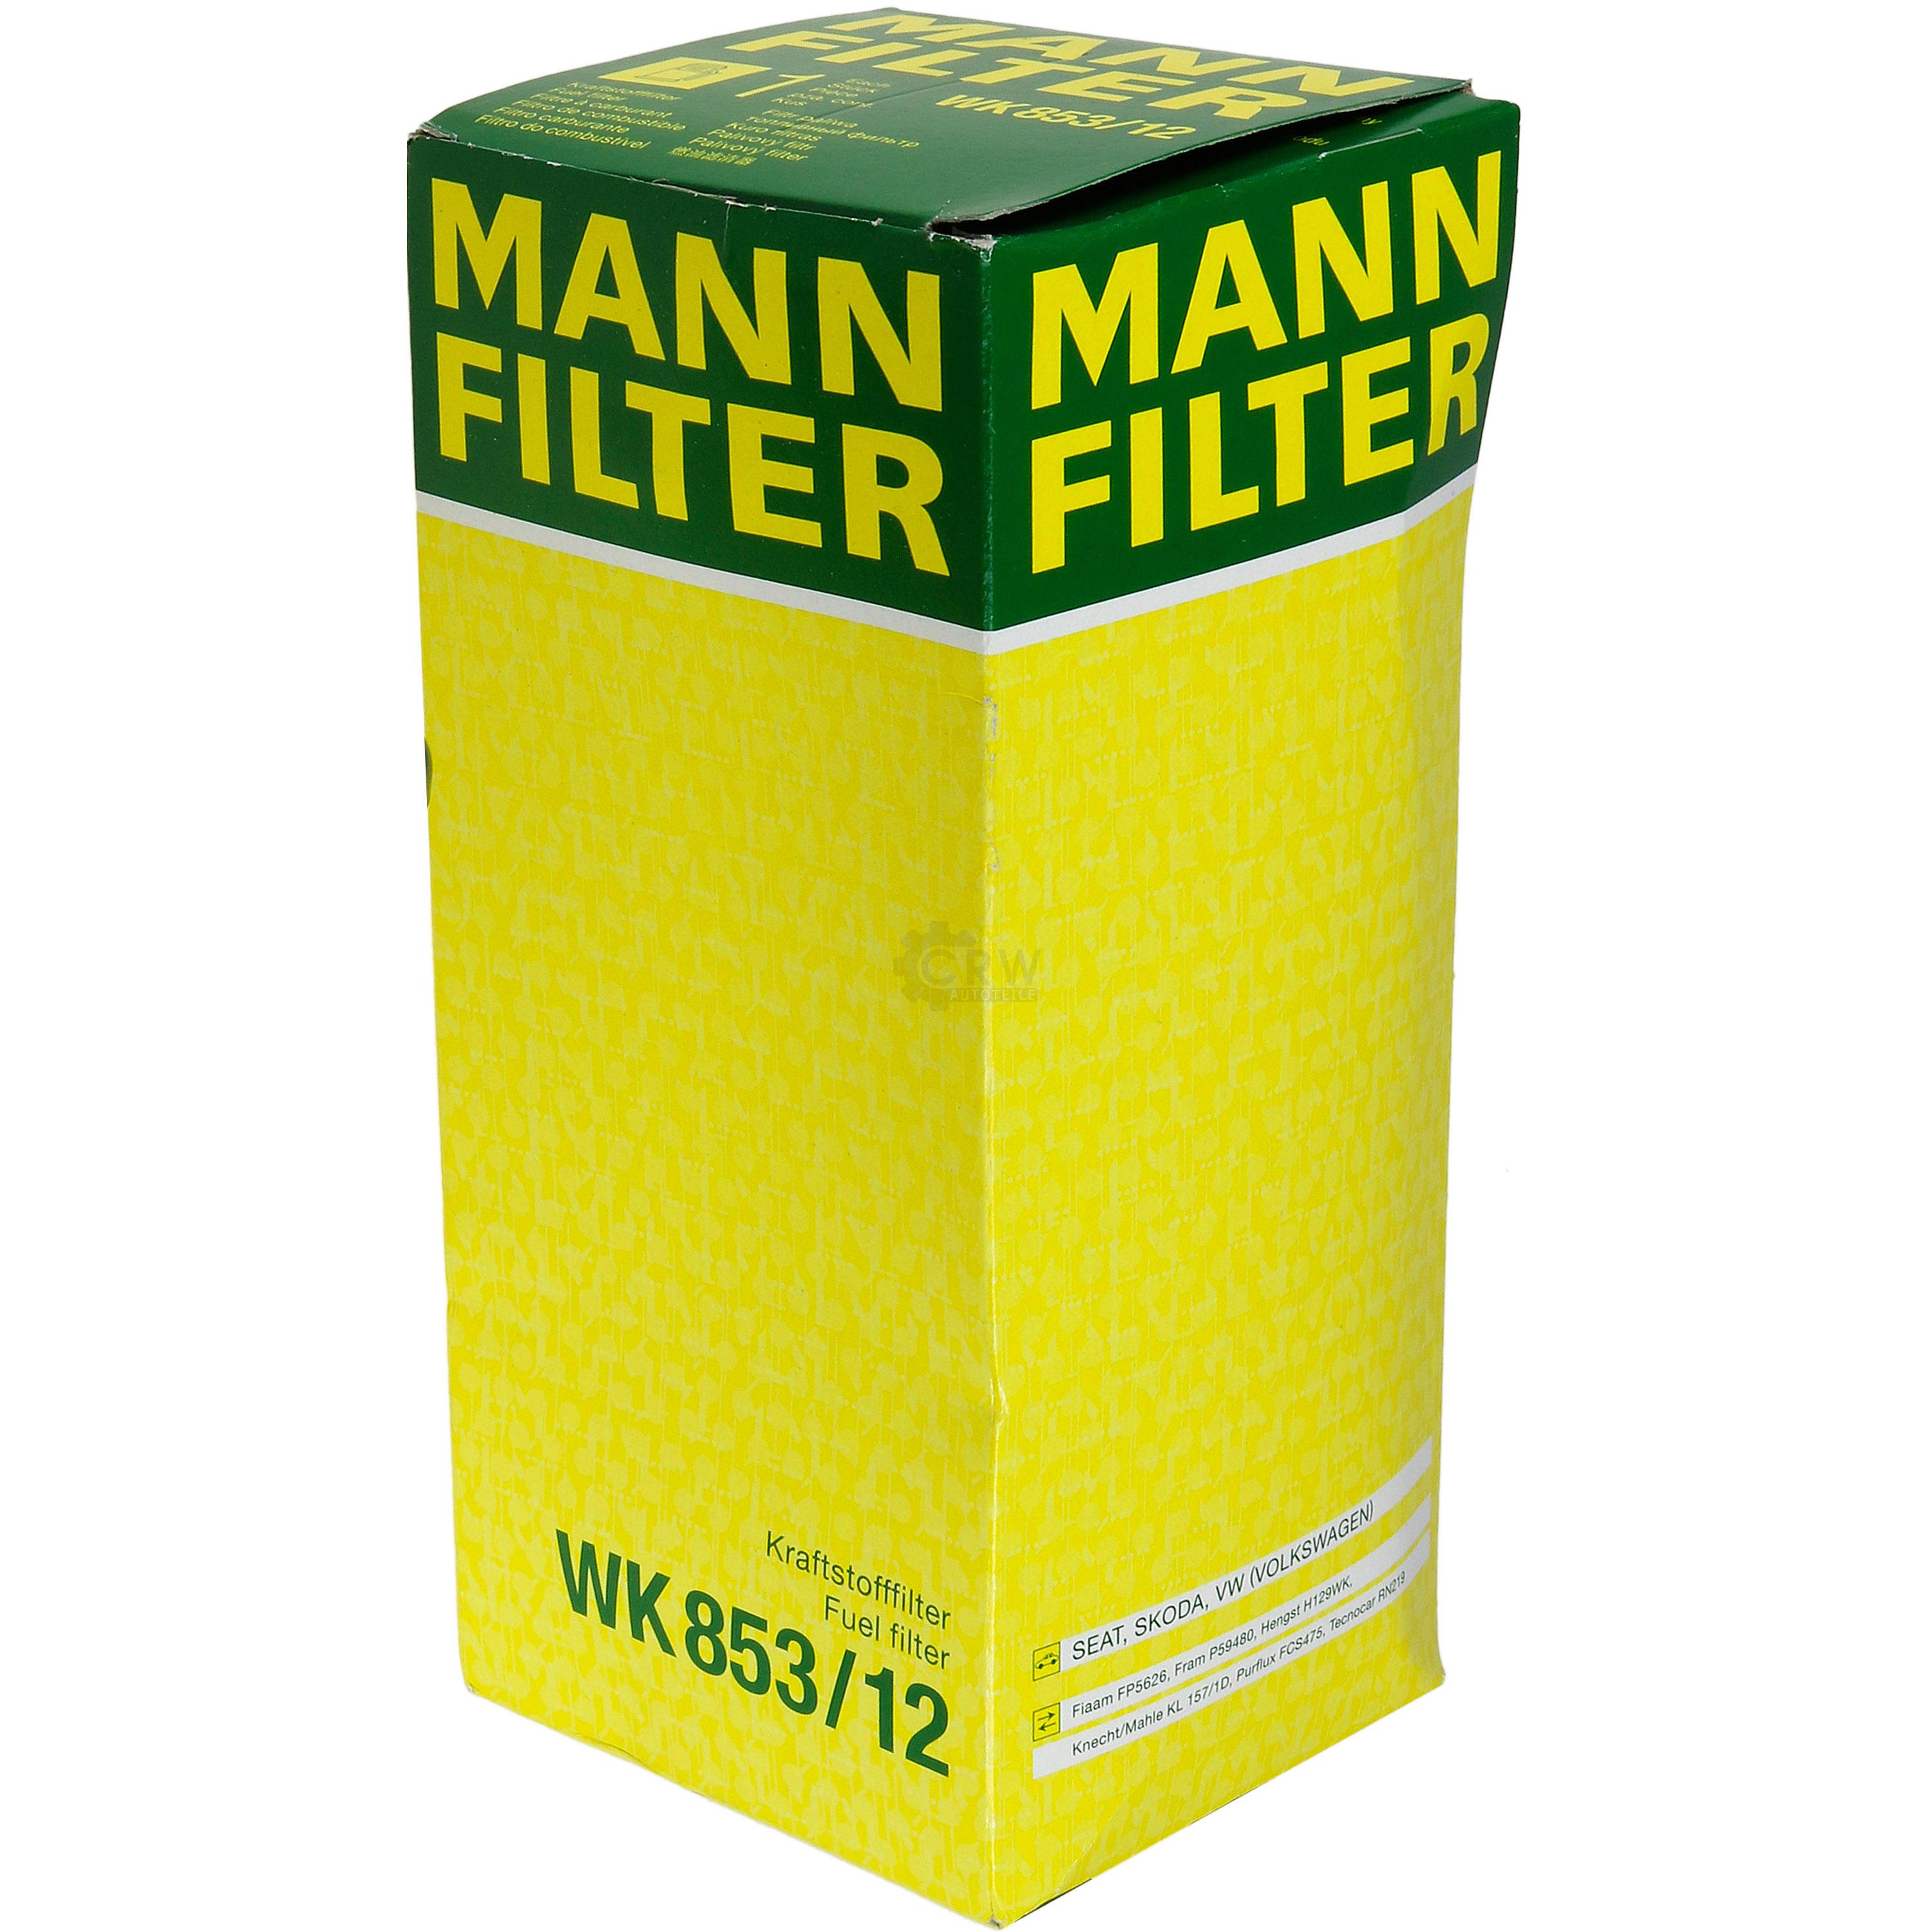 MANN-FILTER Kraftstofffilter WK 853/12 Fuel Filter